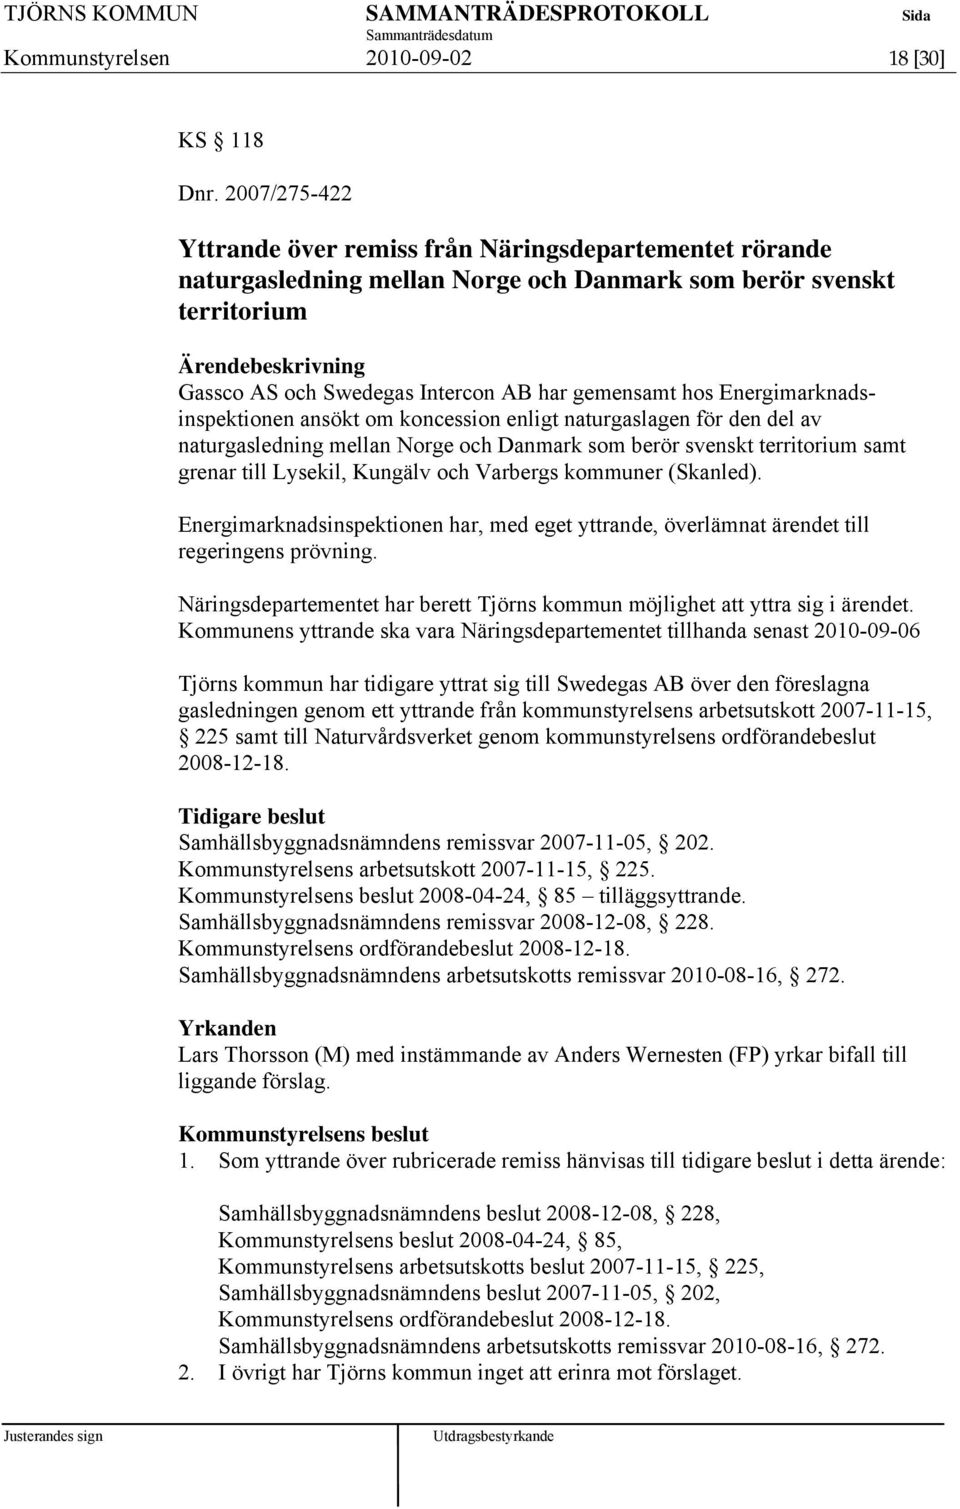 Energimarknadsinspektionen ansökt om koncession enligt naturgaslagen för den del av naturgasledning mellan Norge och Danmark som berör svenskt territorium samt grenar till Lysekil, Kungälv och